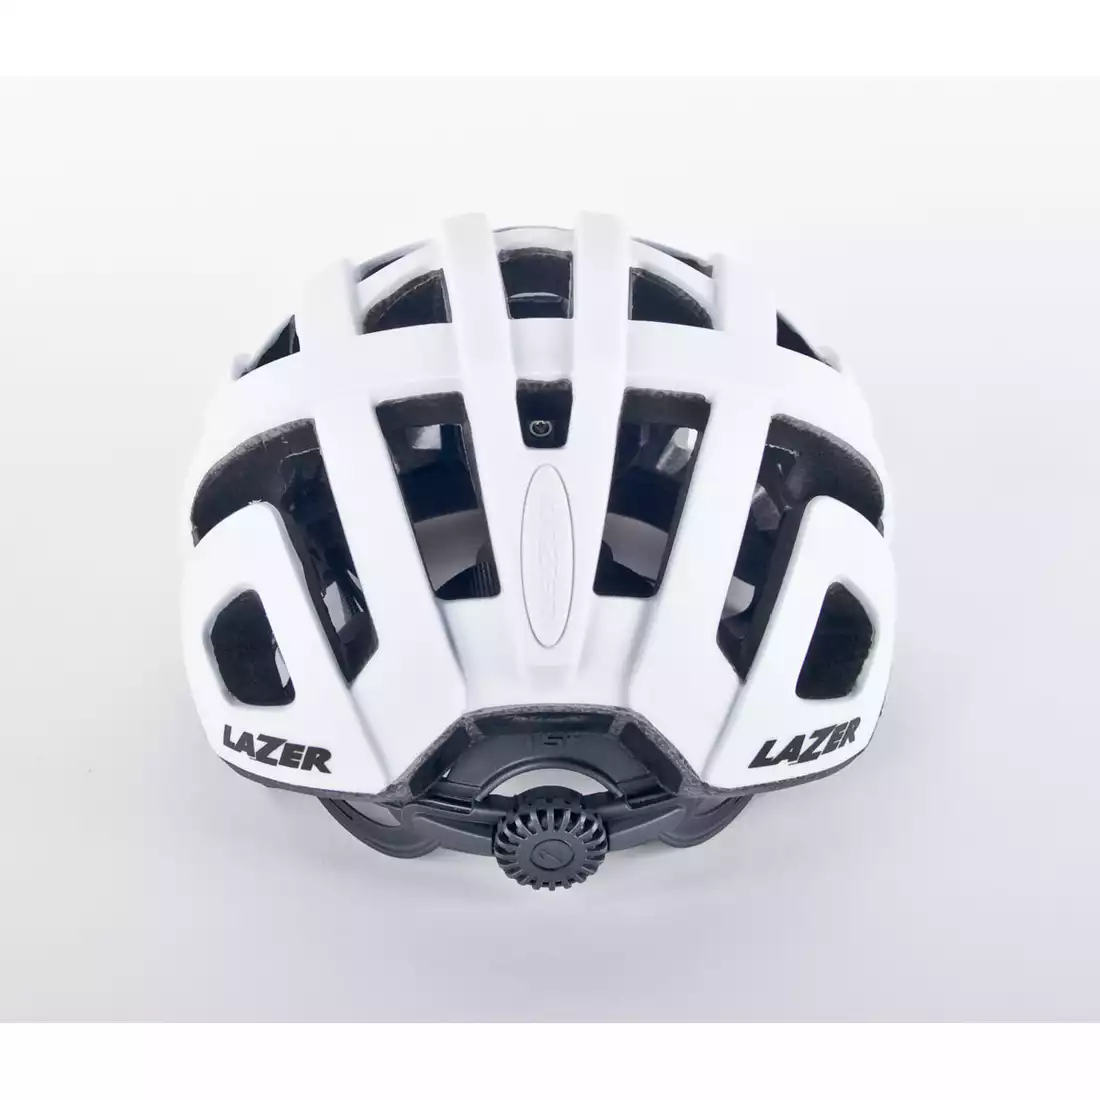 LAZER ROLLER MTB kask rowerowy TS+ biały mat